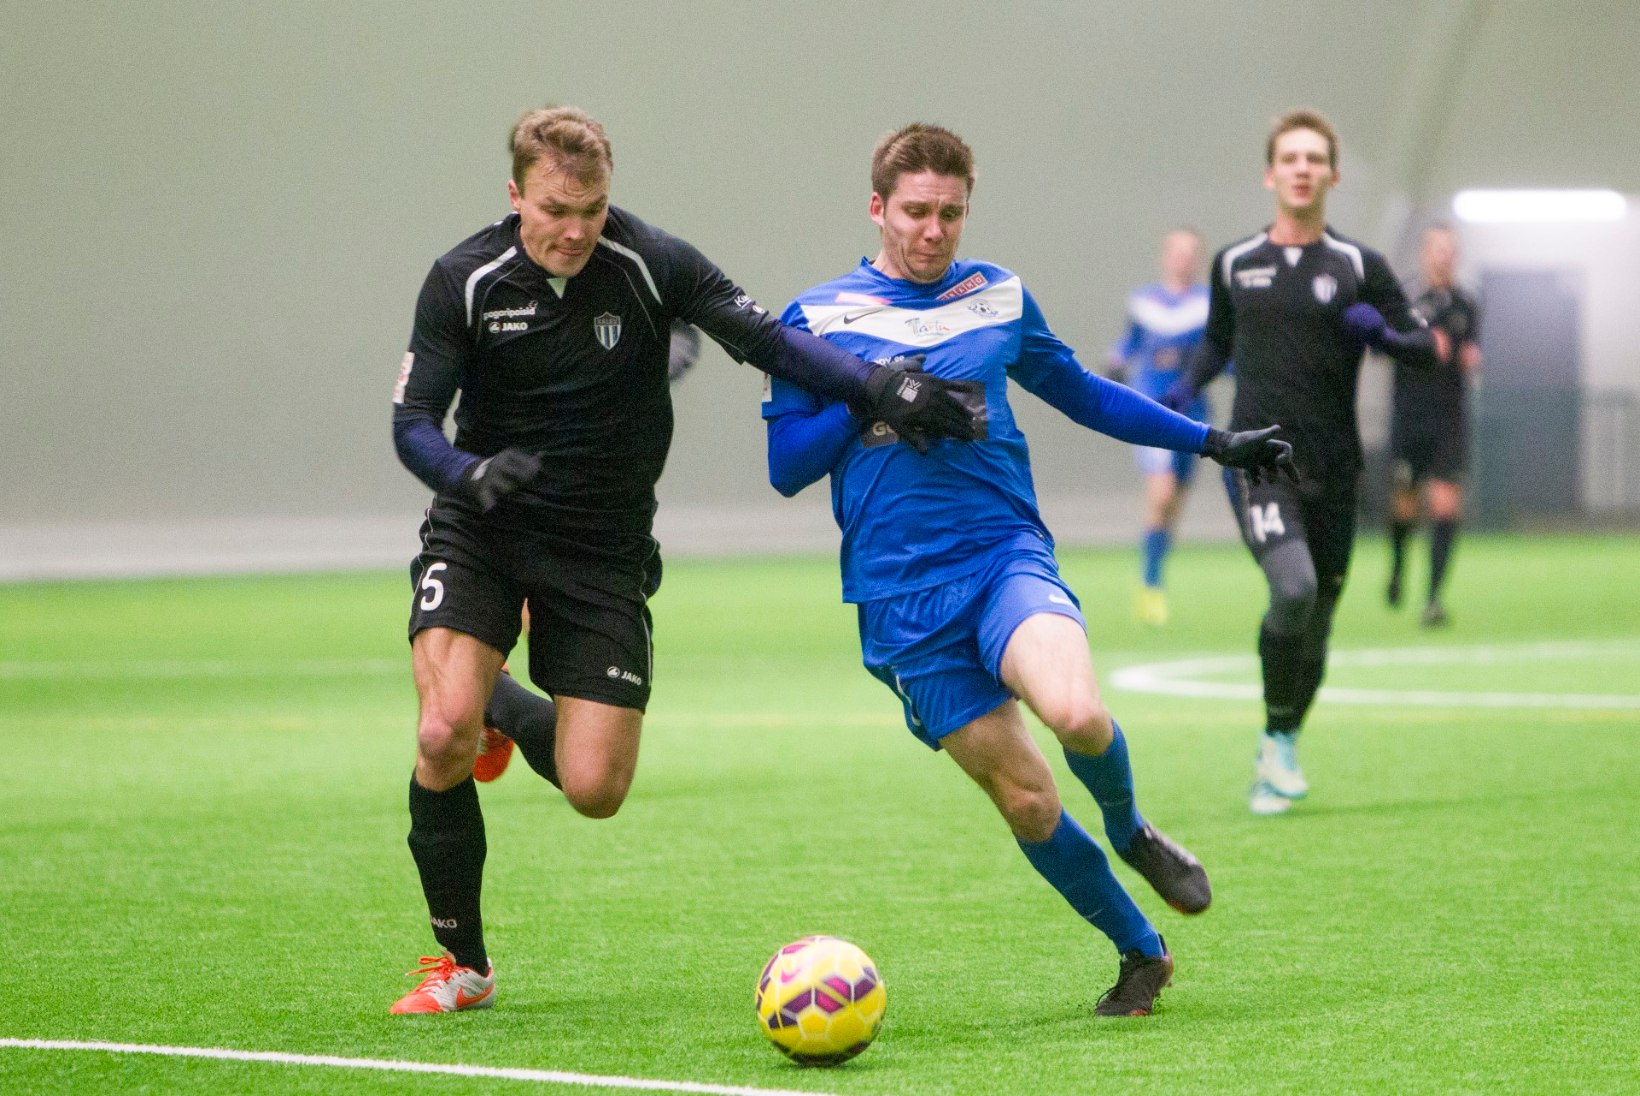 Milline on Eesti esiliigaklubide võimekus tõusta jalgpalli meistrisarja?